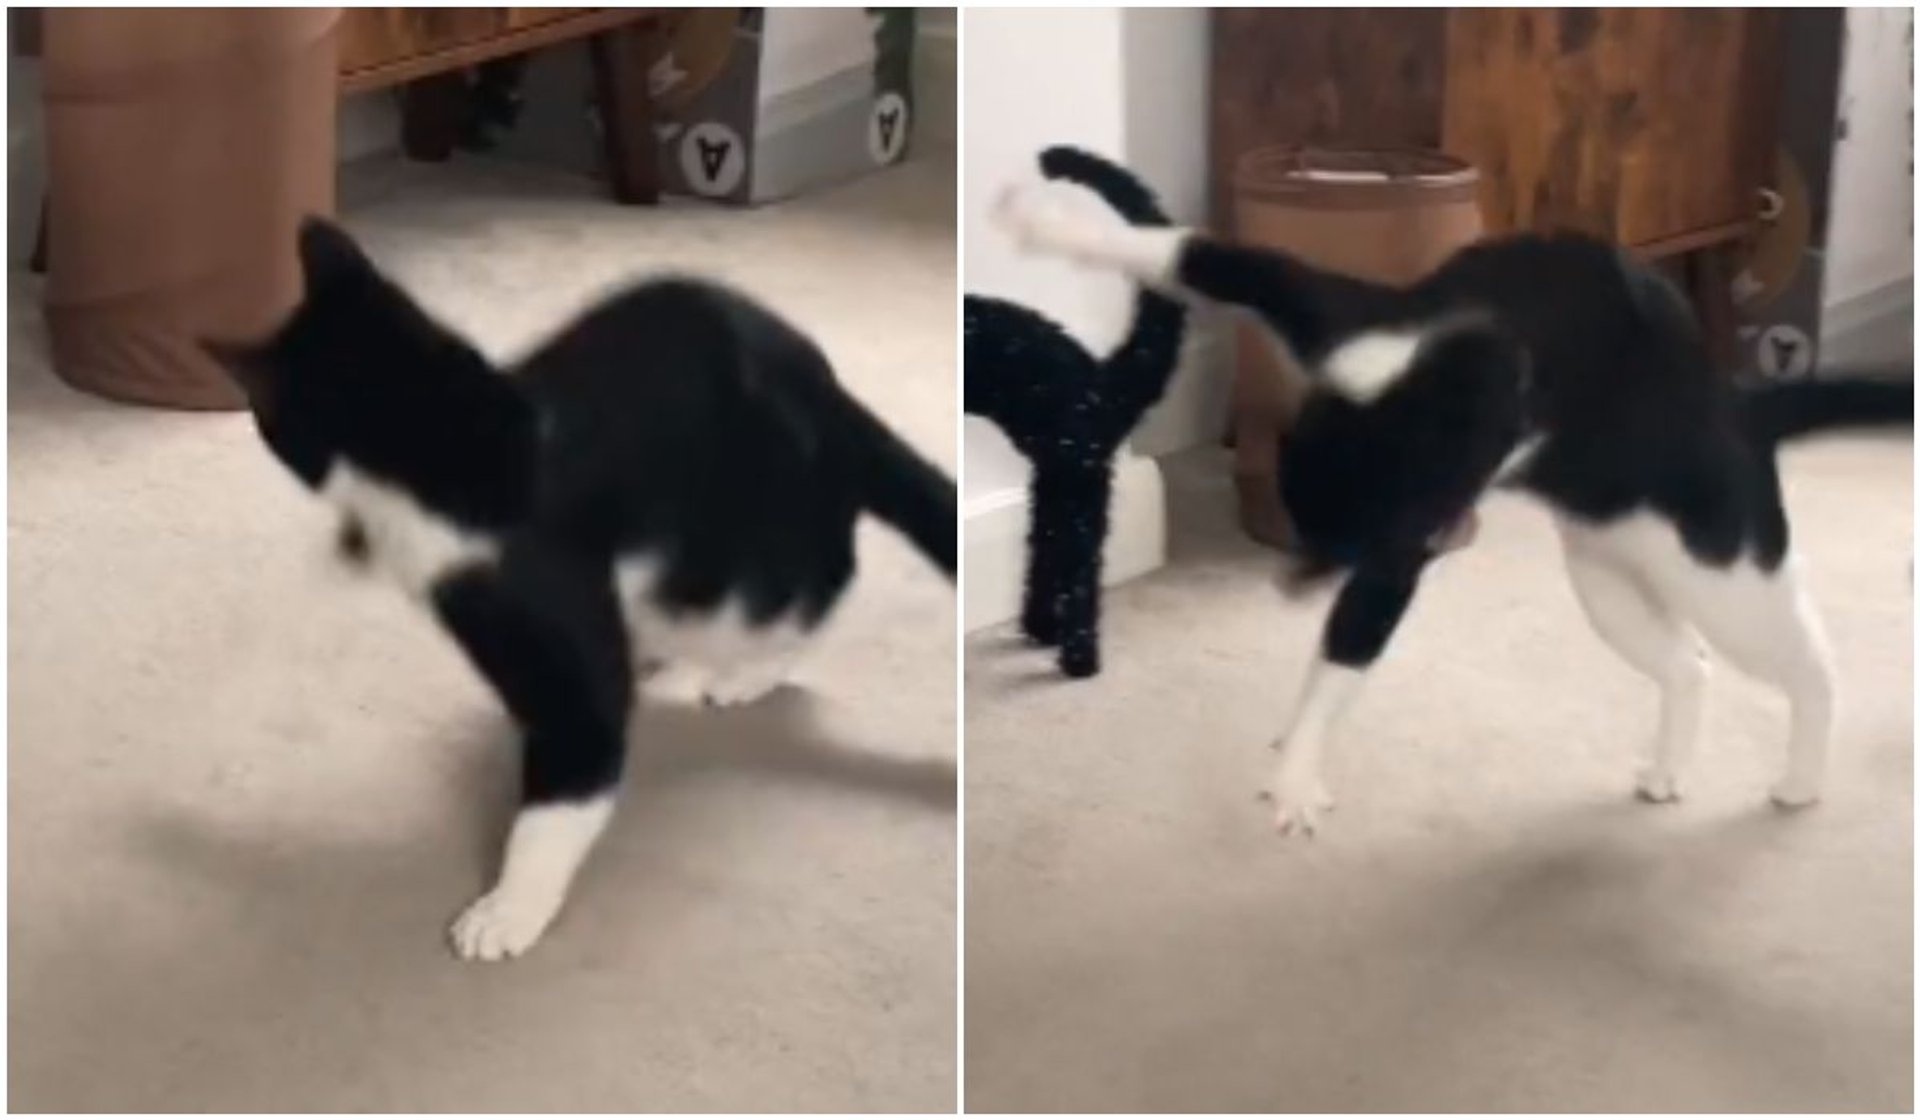 Viralowe wideo pokazuje walkę kota z halloweenową dekoracją